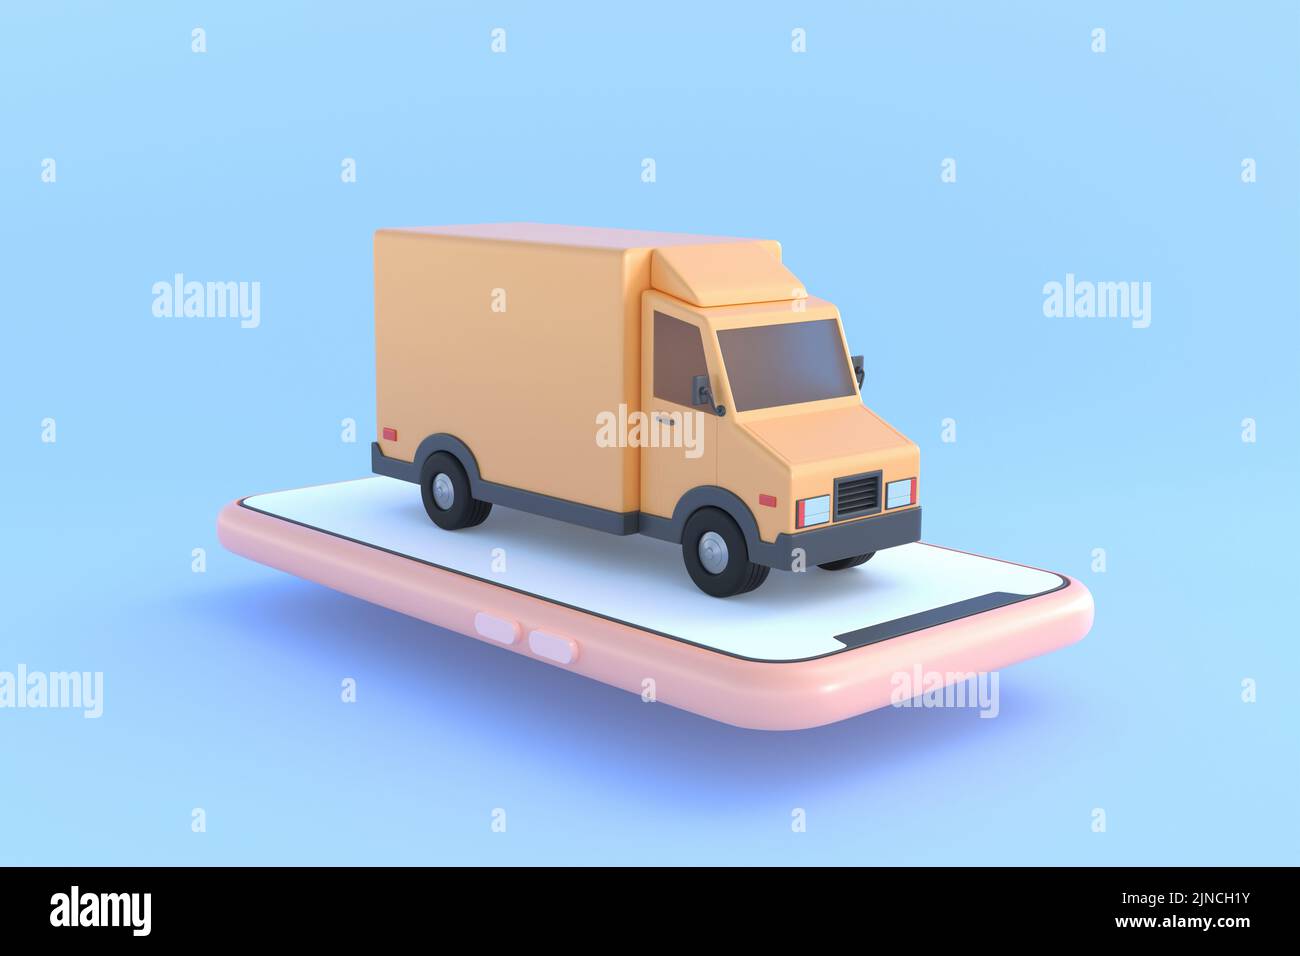 Concept de commerce électronique, Service de livraison sur application mobile, transport par camion, illustration 3D Banque D'Images